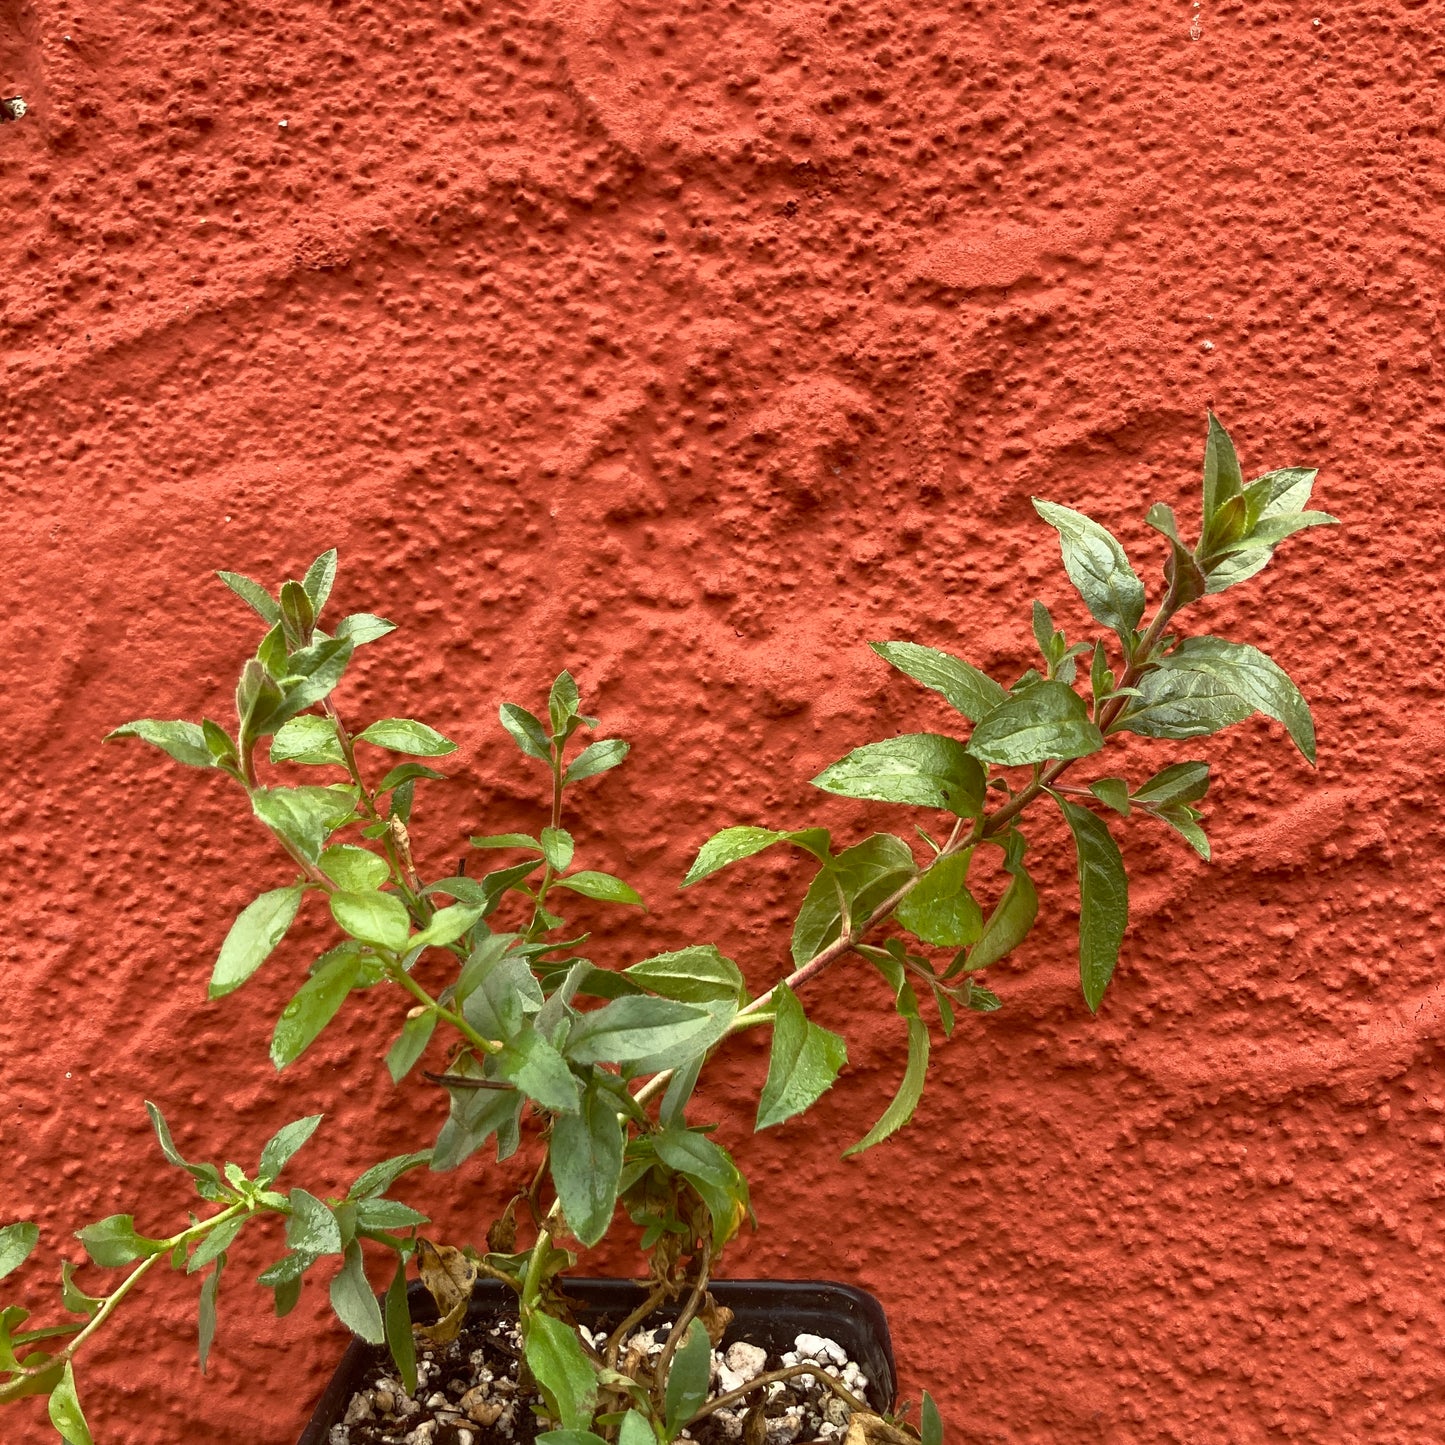 Epilobium canum ssp. latifolium - California Fuschia